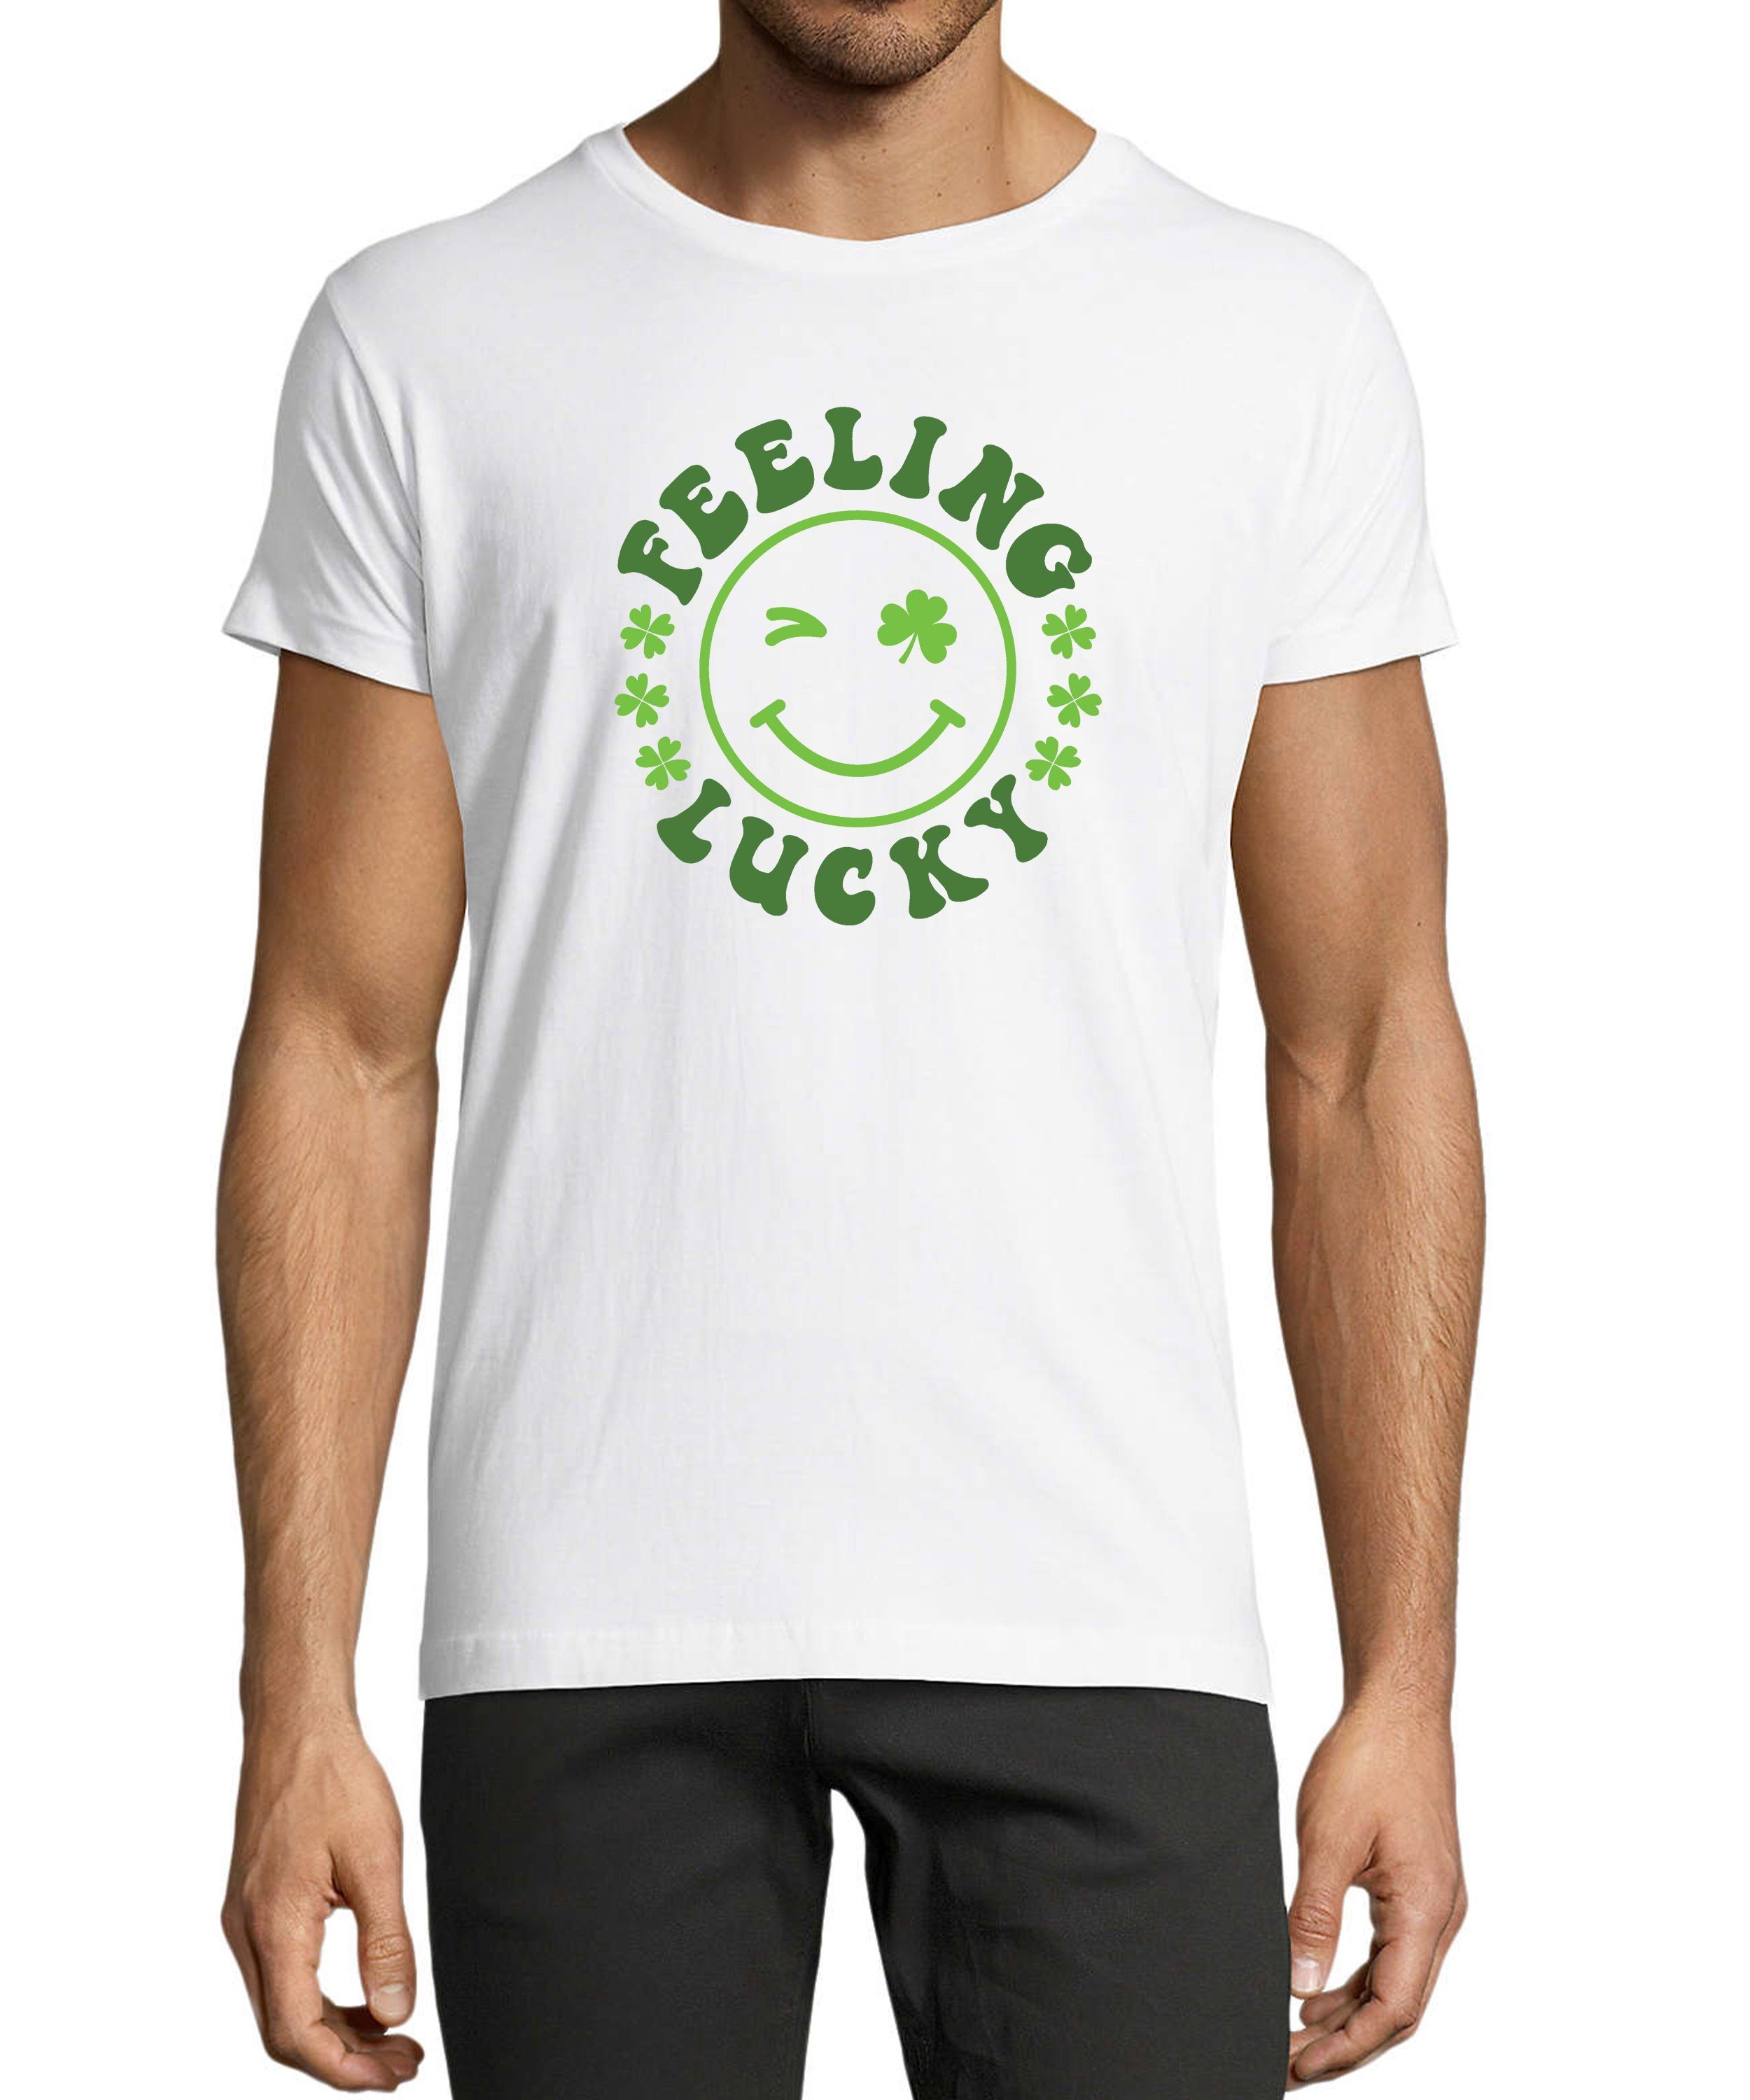 MyDesign24 T-Shirt Herren Smiley Print Shirt - Zwinkernder Smiley mit Kleeblättern Baumwollshirt mit Aufdruck Regular Fit, i295 weiss | T-Shirts